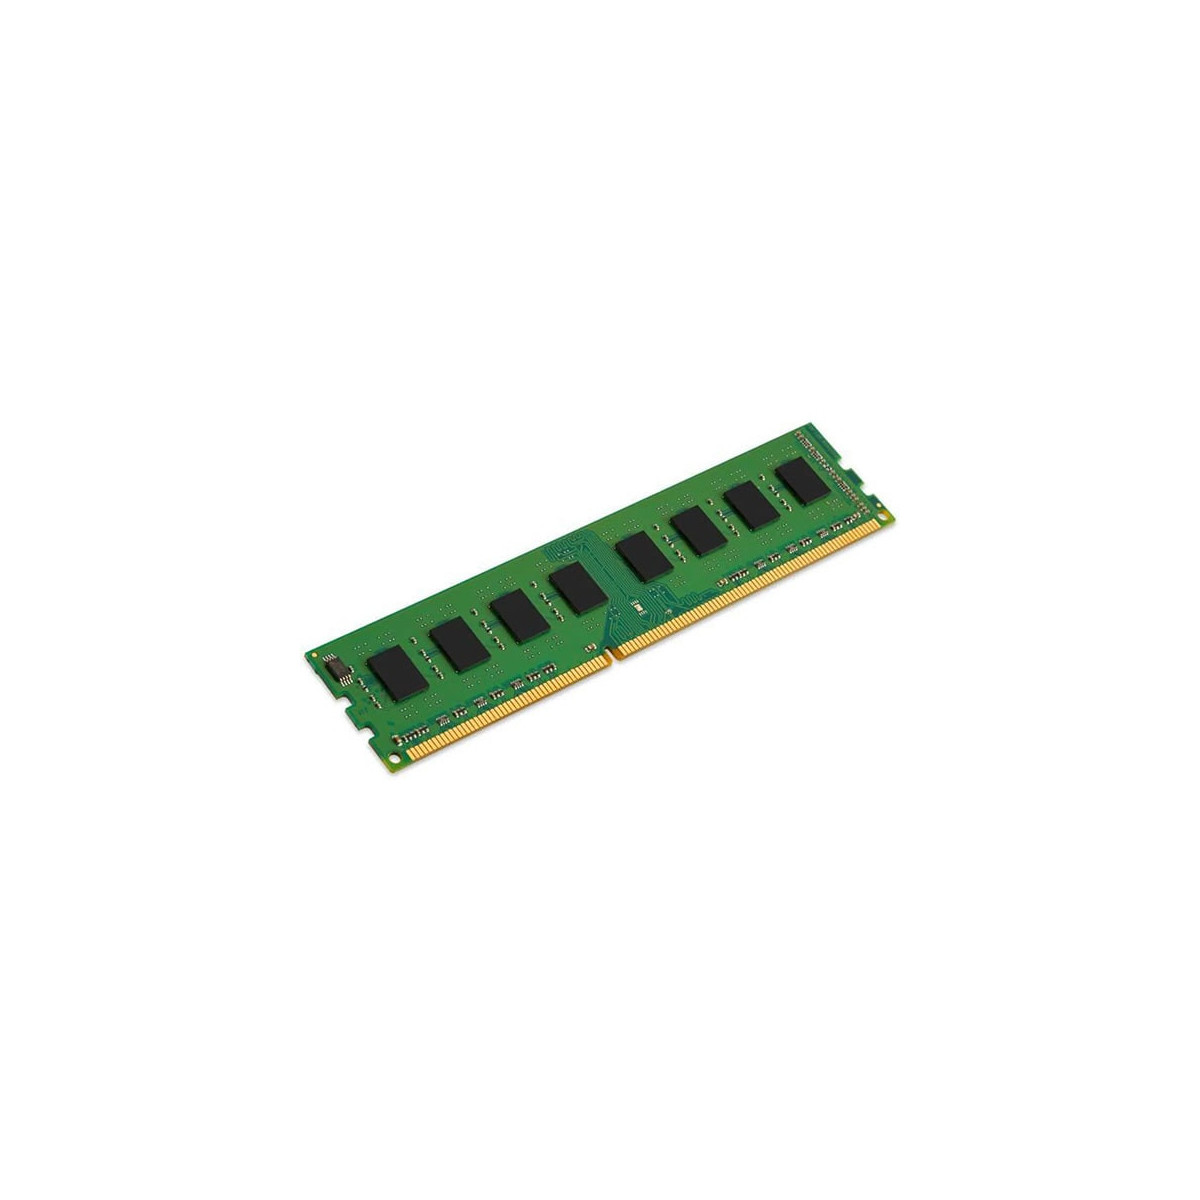 BARRETTE MEMOIRE 2GB DDR3 1600 MHZ POUR PC